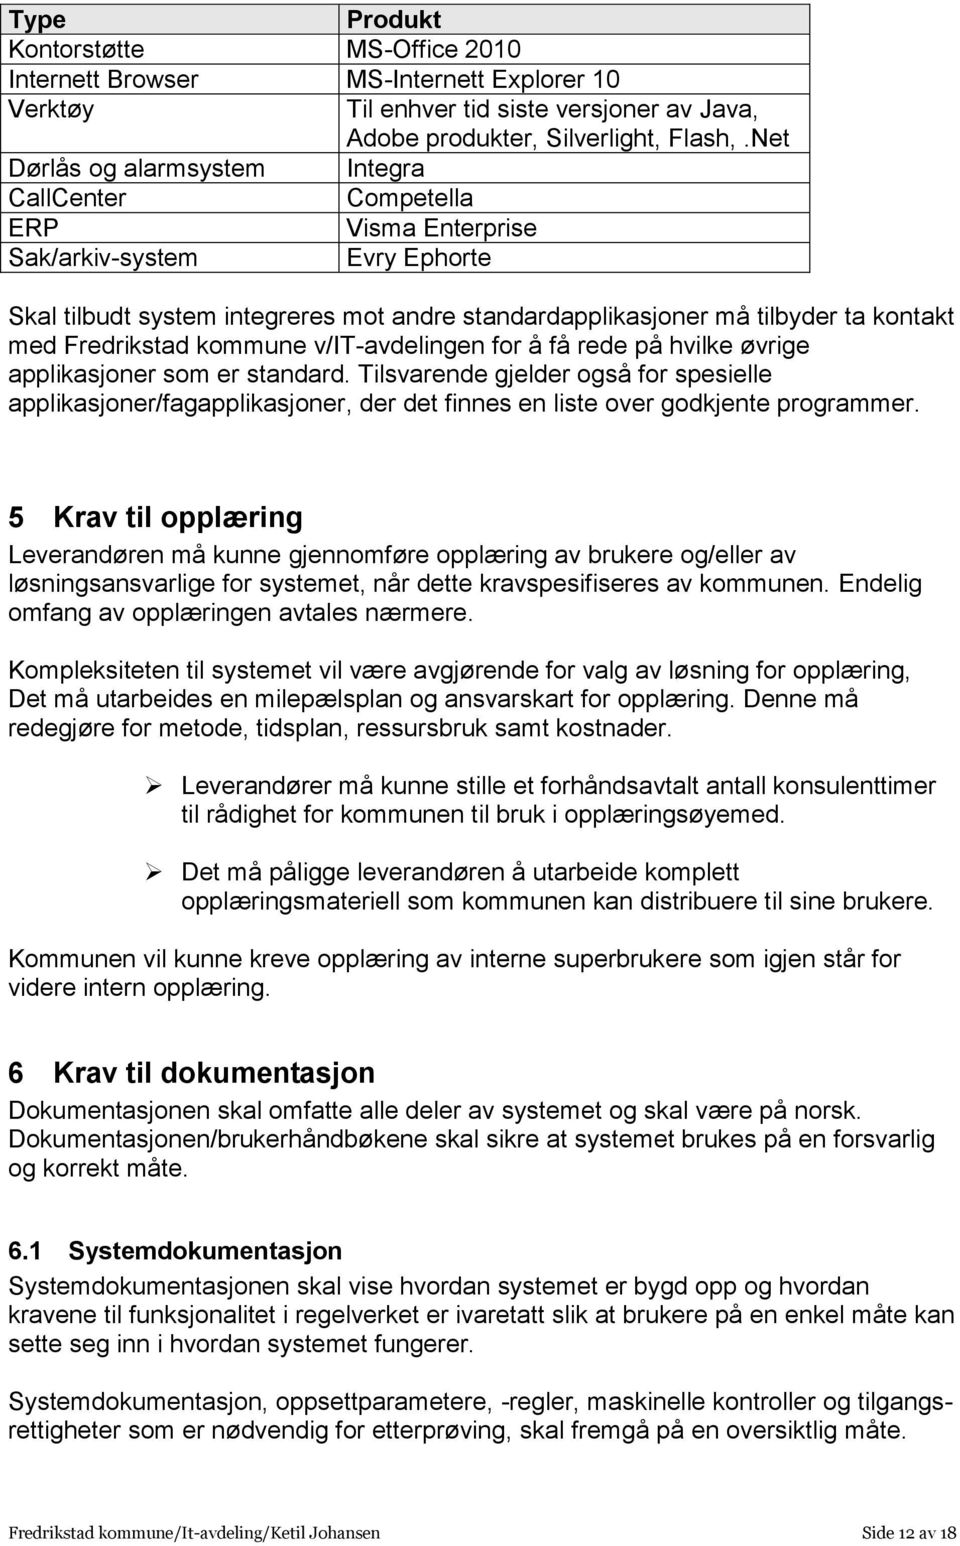 Fredrikstad kommune v/it-avdelingen for å få rede på hvilke øvrige applikasjoner som er standard.